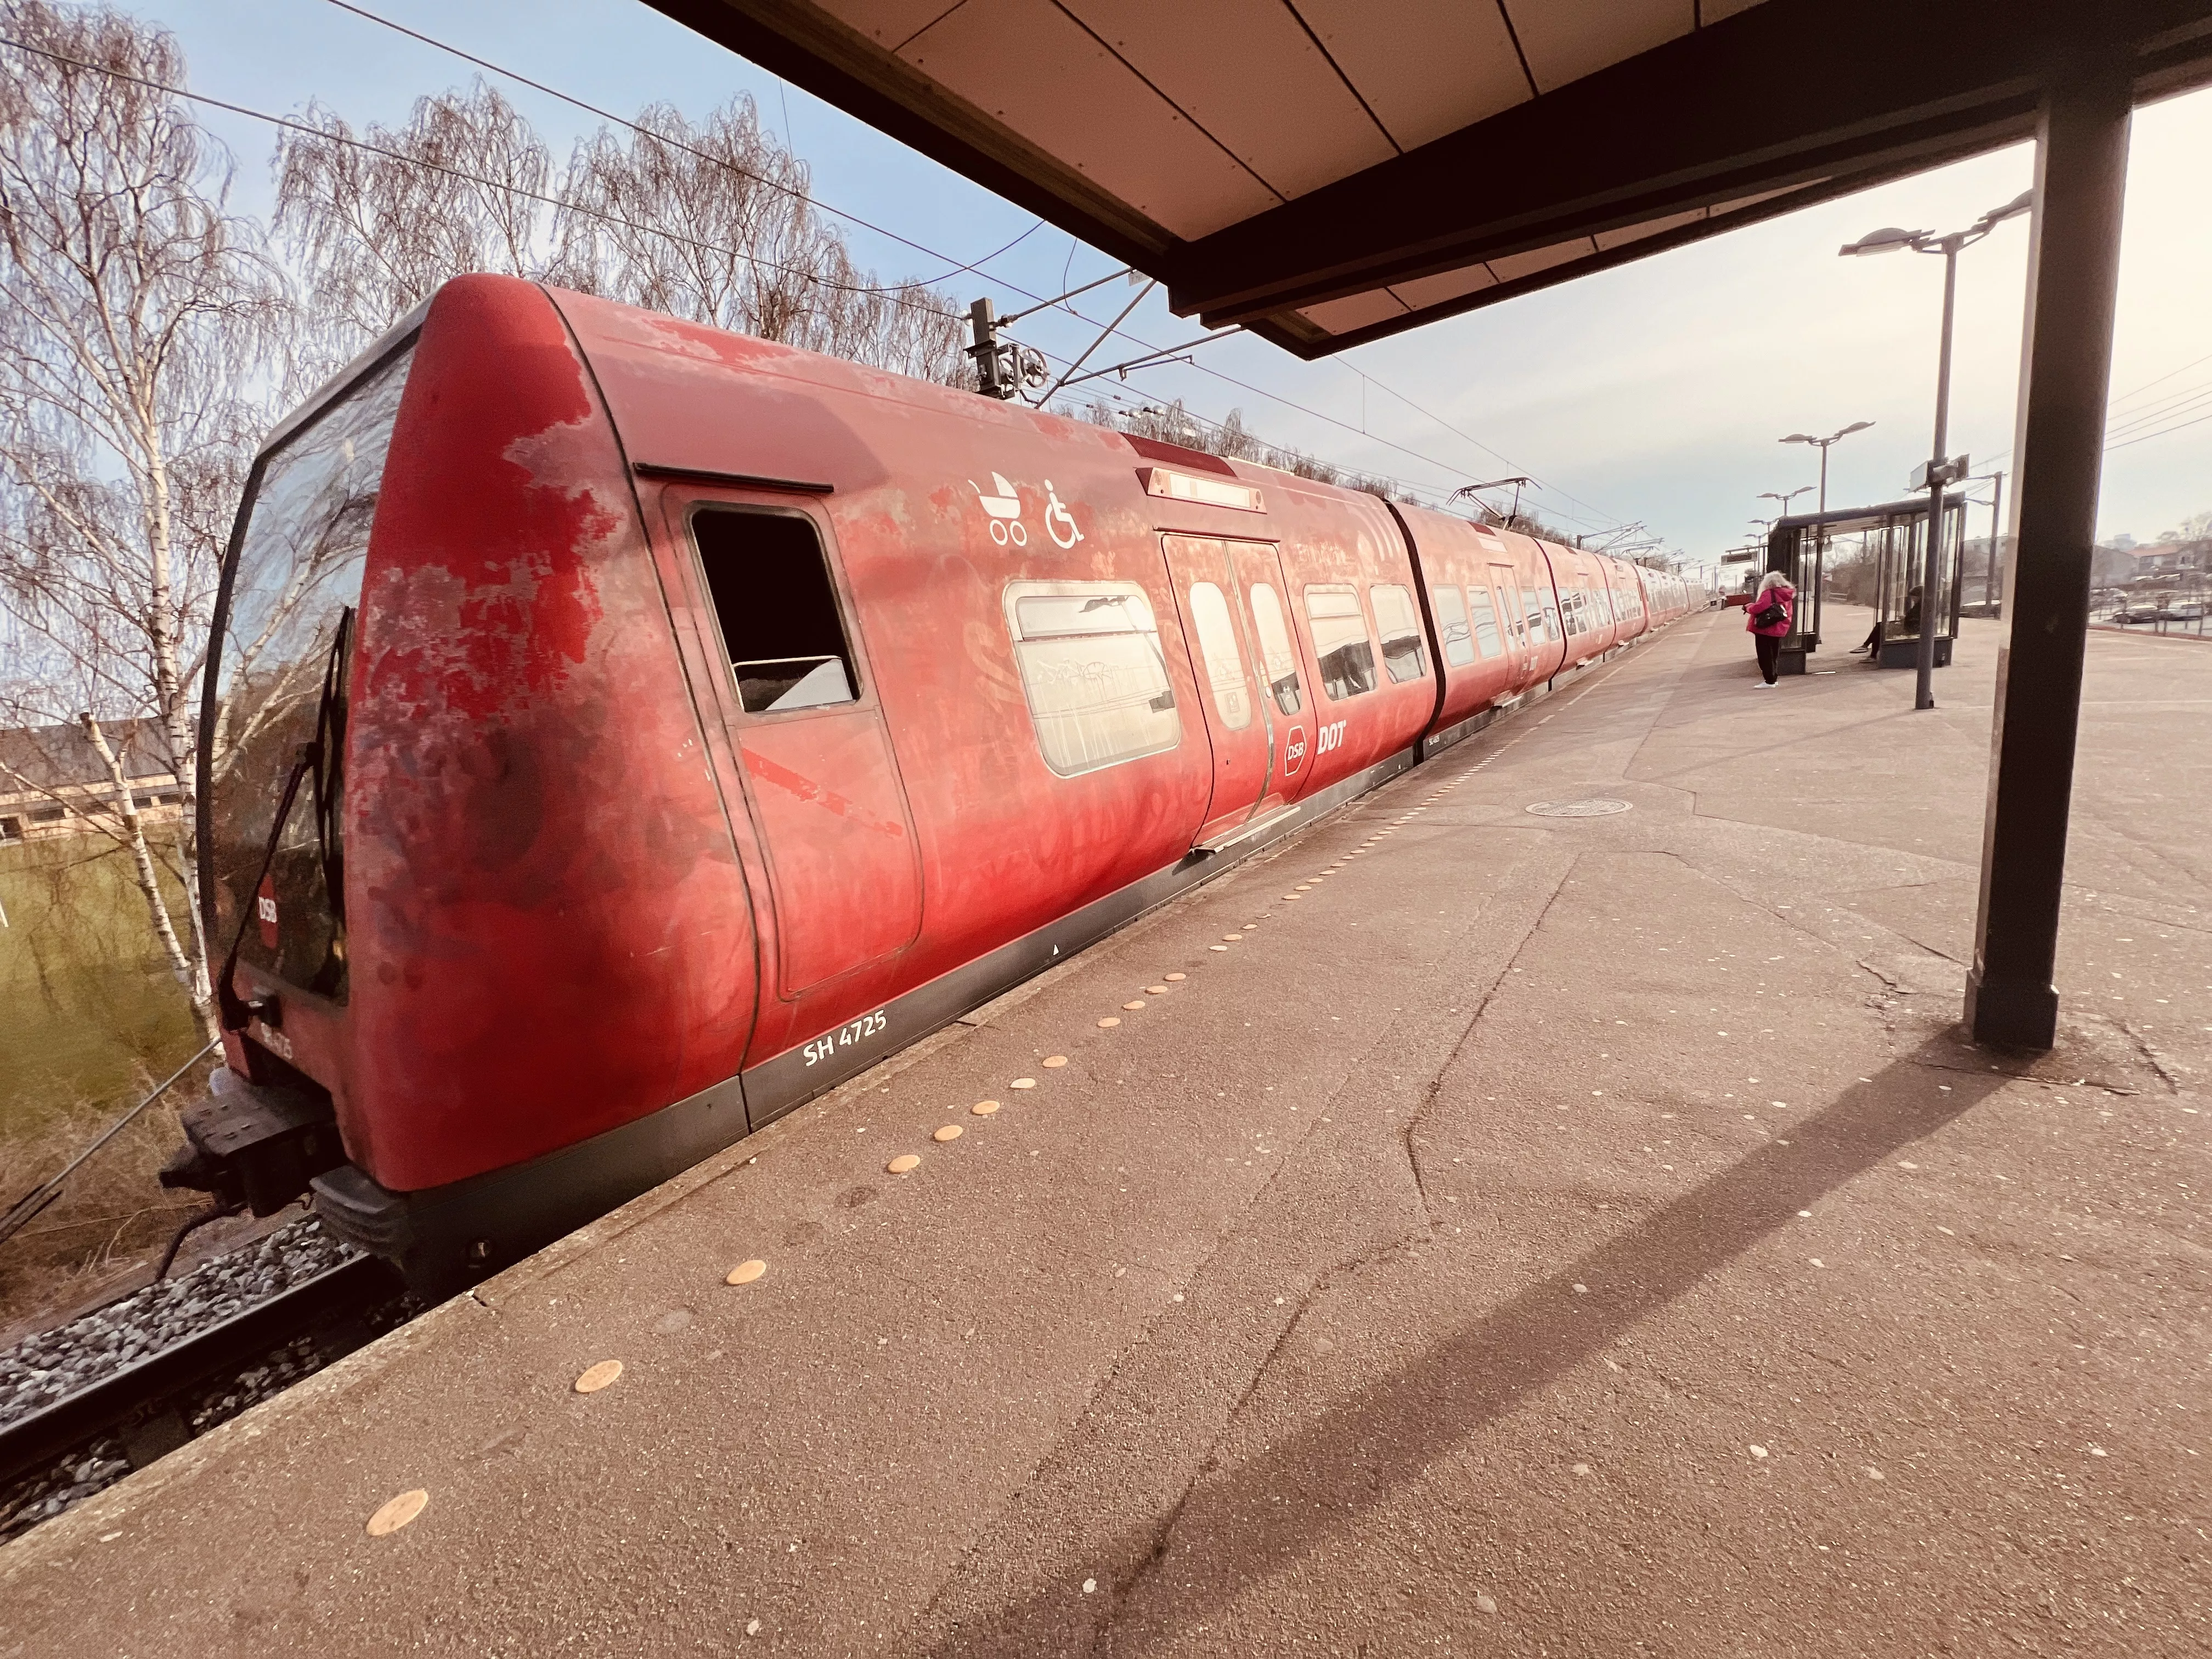 Billede af tog ud for Friheden S-togstrinbræt.